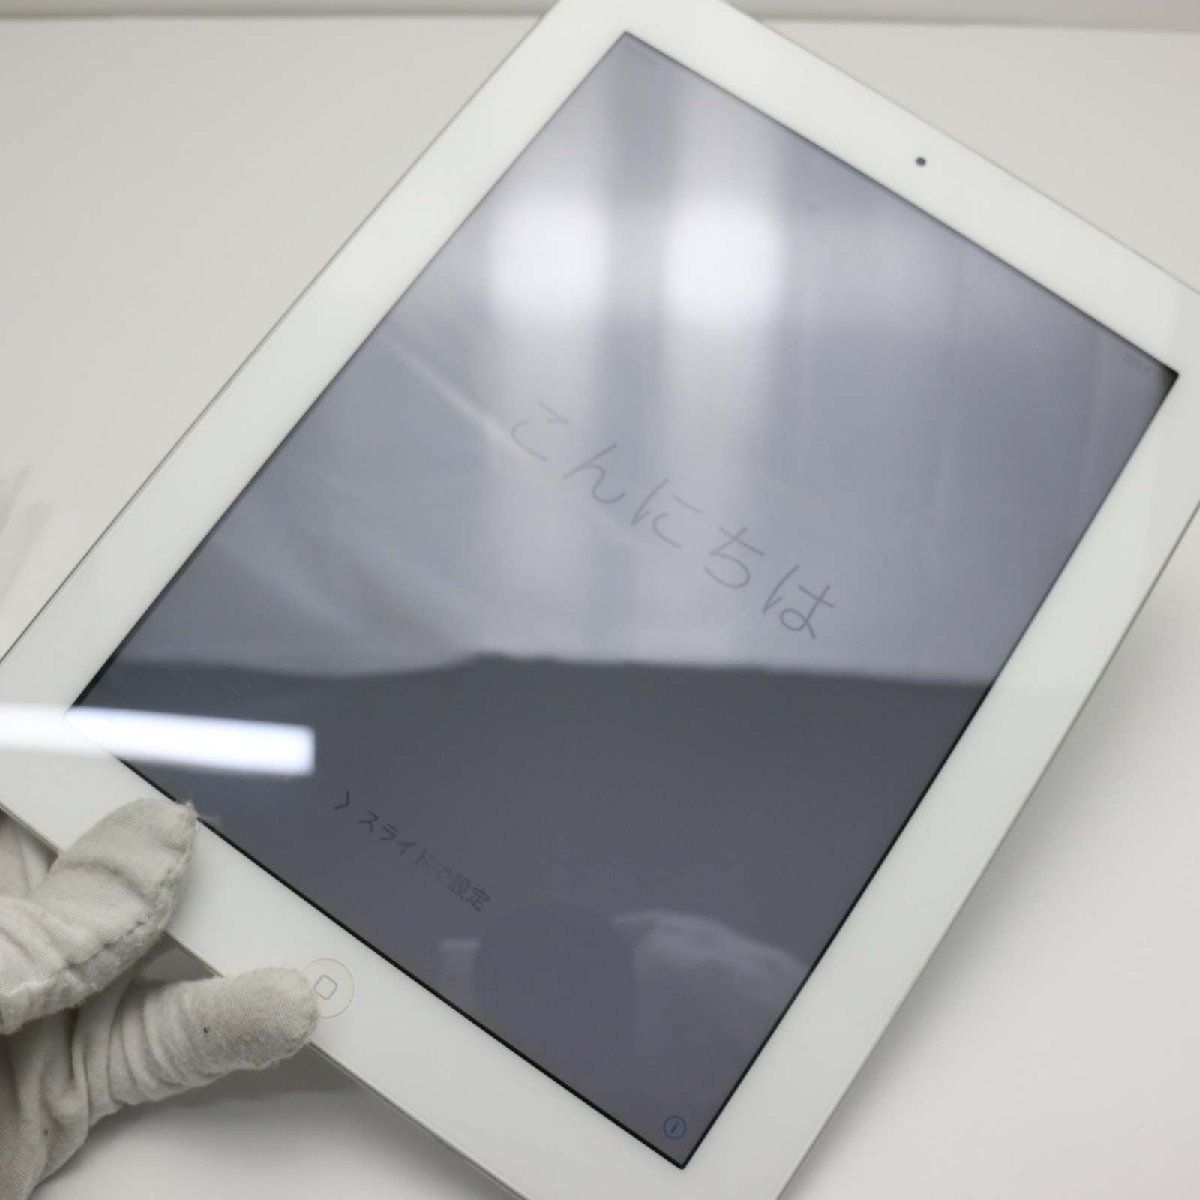 美品 iPad2 Wi-Fi+3G 64GB ホワイト 判定○ 即日発送 タブレットApple 